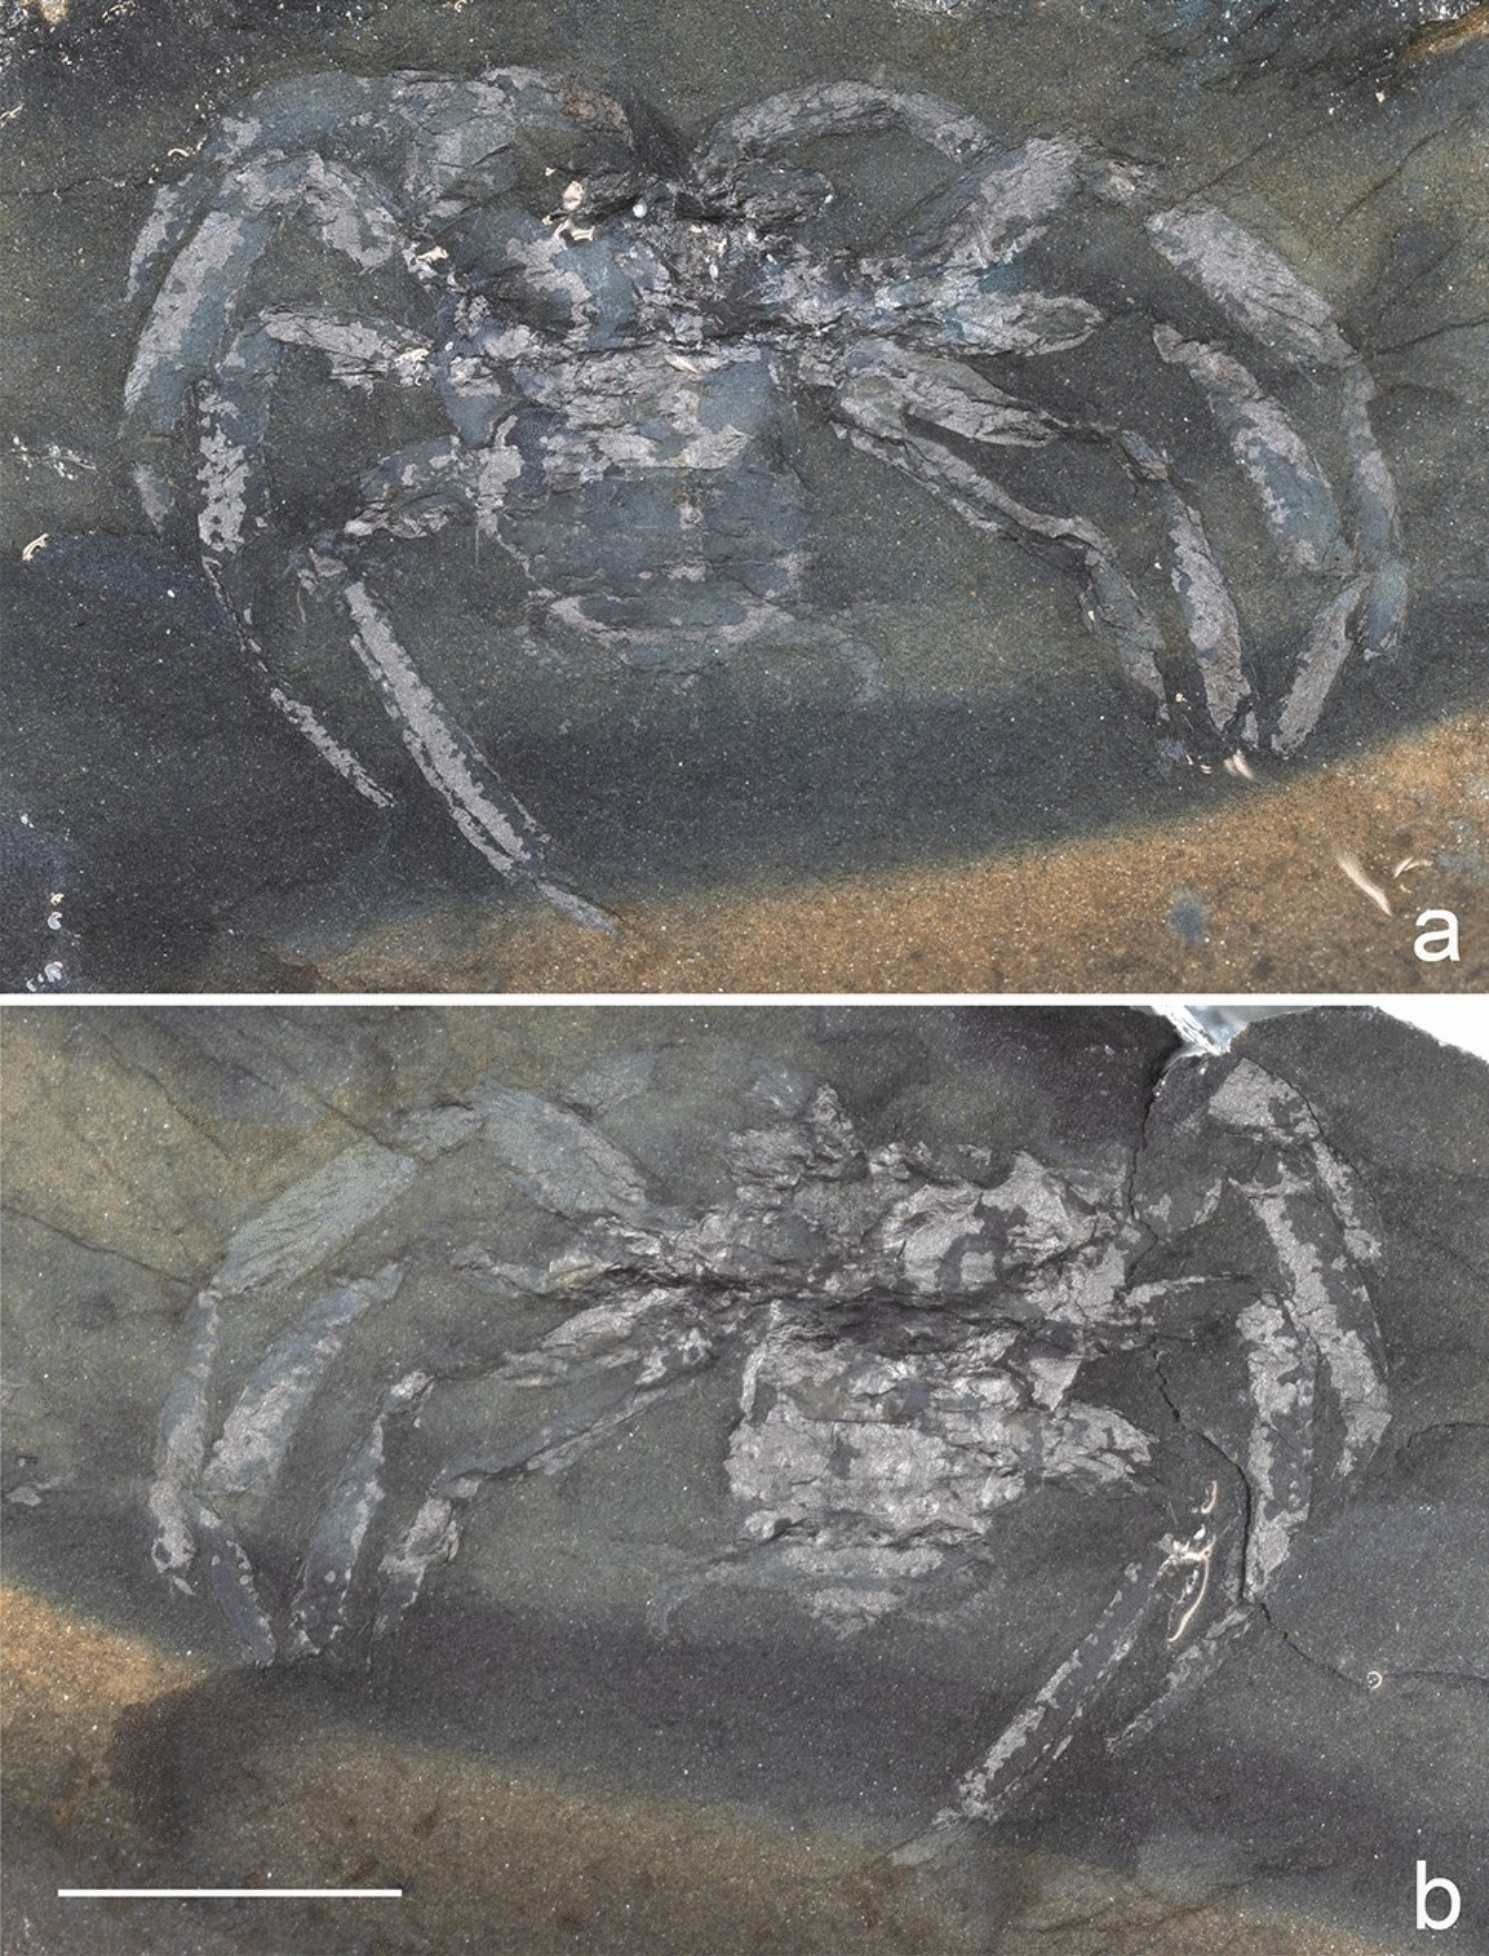 Arthrolycosa wolterbeeki sp. nov., vecākais fosilais zirneklis (Arachnida: Araneae) no Vācijas, no Pīzbergas vēlīnā karbona pie Osnabrukas, Lejassaksijā.